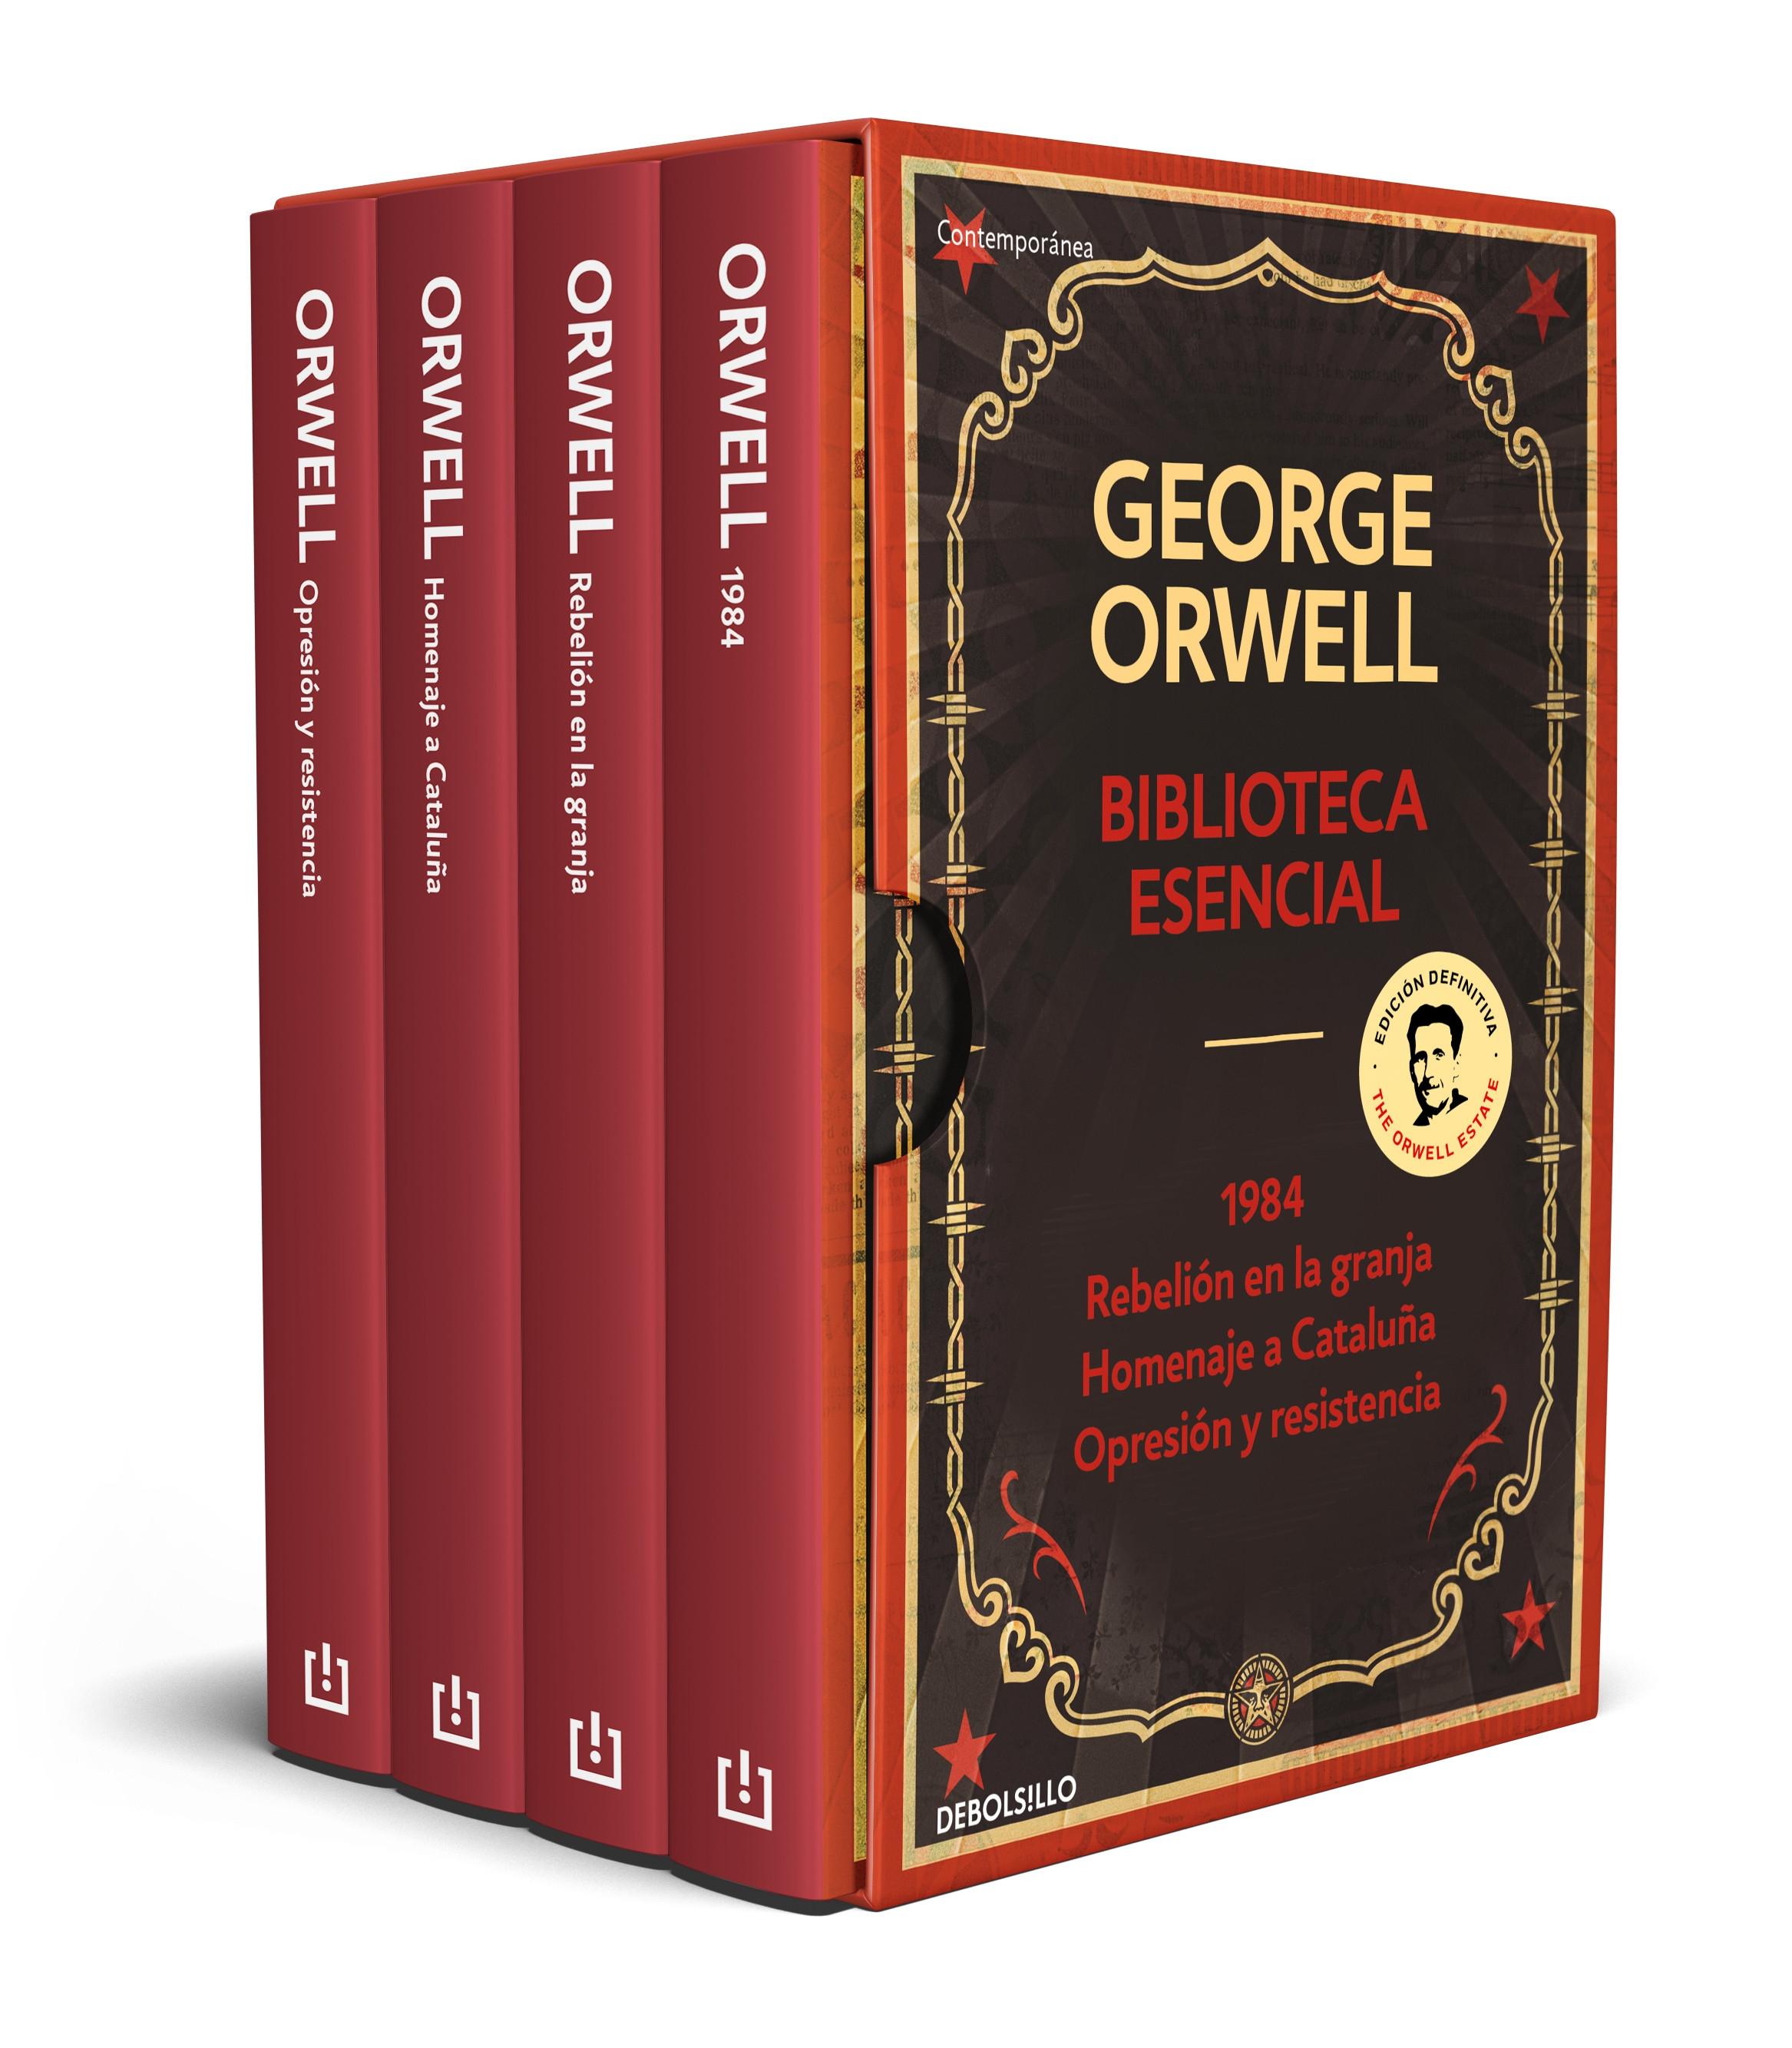 George Orwell. Biblioteca esencial (Estuche 4 Vols.) "1984 / Rebelión en la granja / Homenaje a Cataluña / Opresión y resistencia"